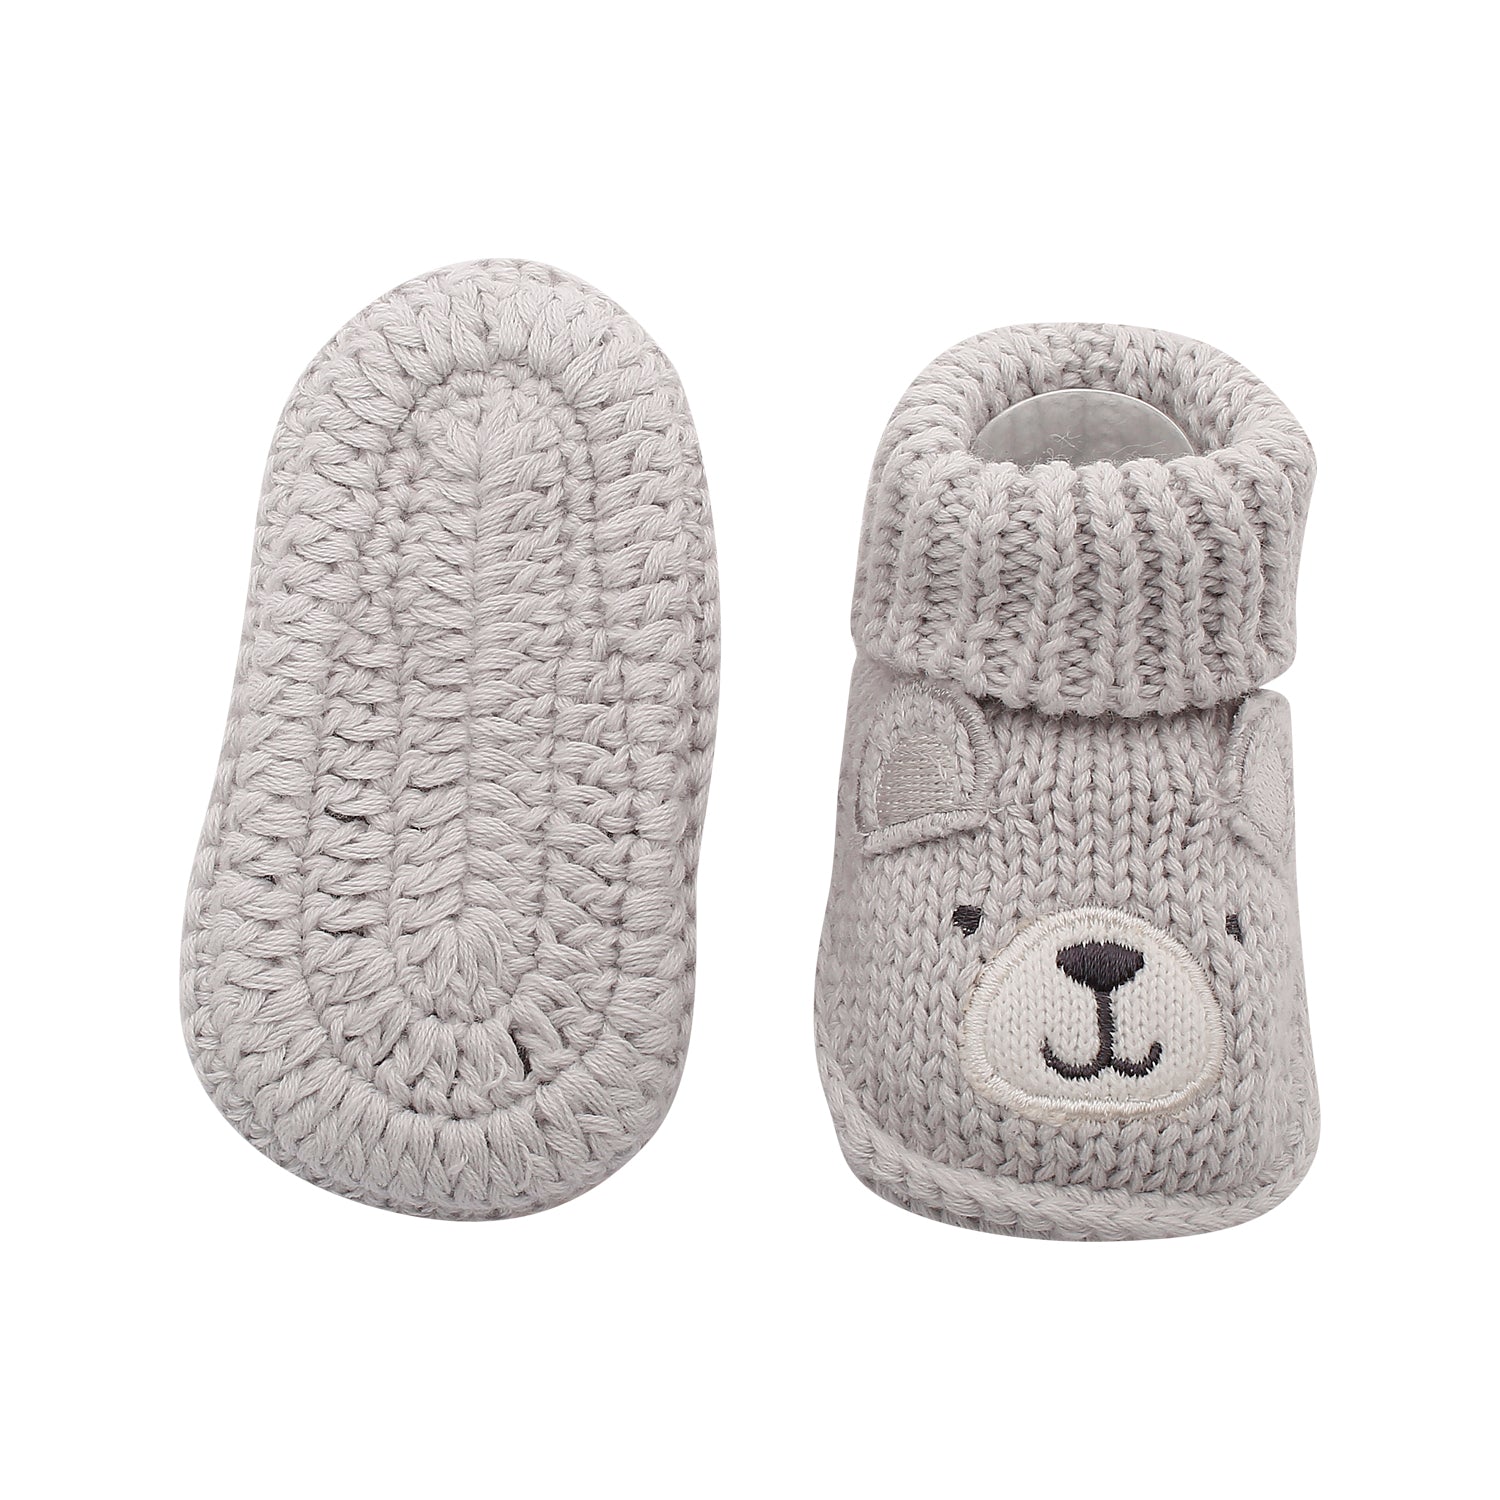 Bff Bear Grey Socks Booties - Baby Moo